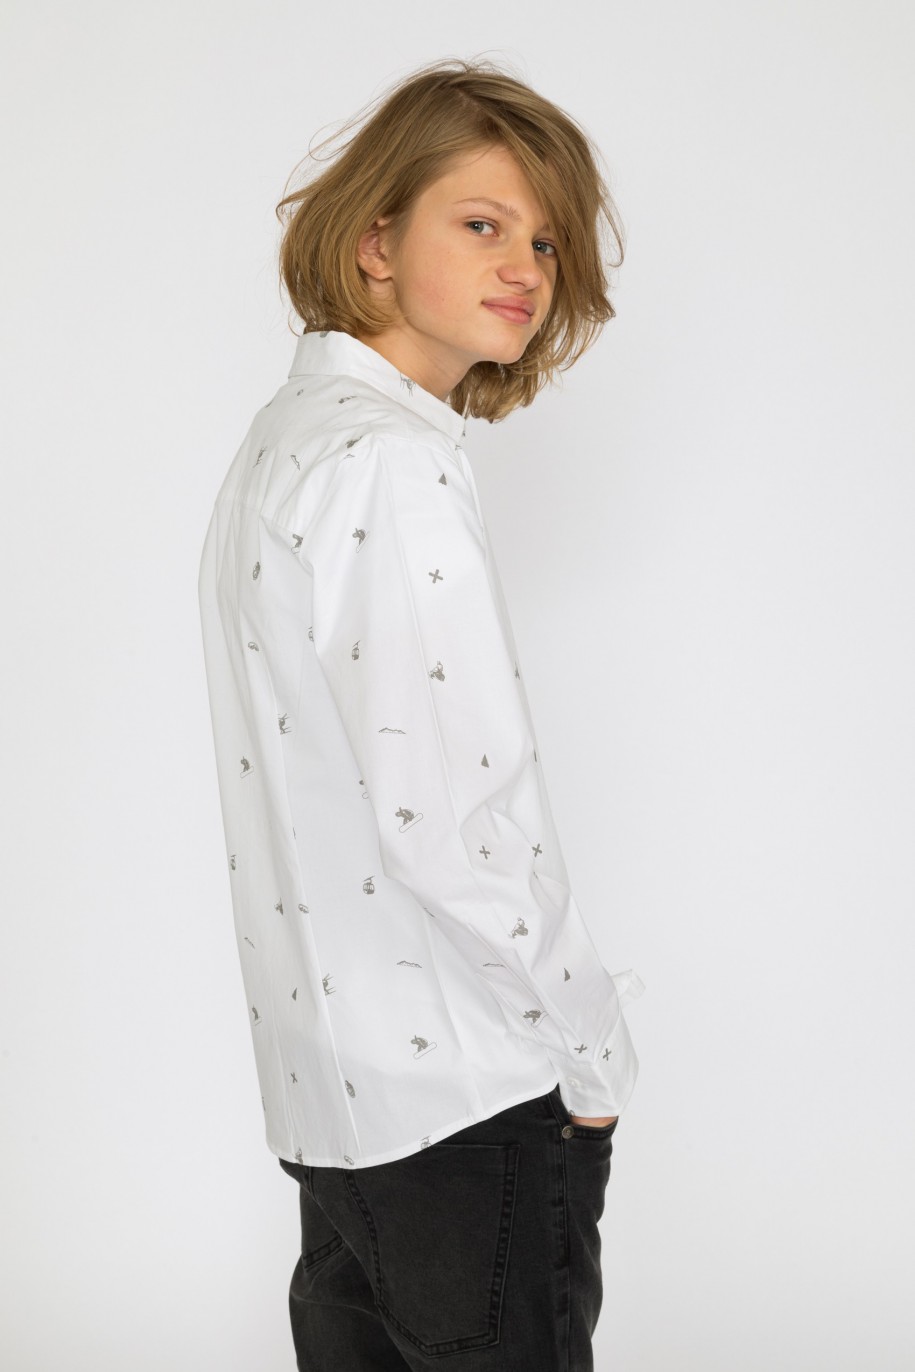 Biała koszula w zimowy wzór dla chłopaka - 32056